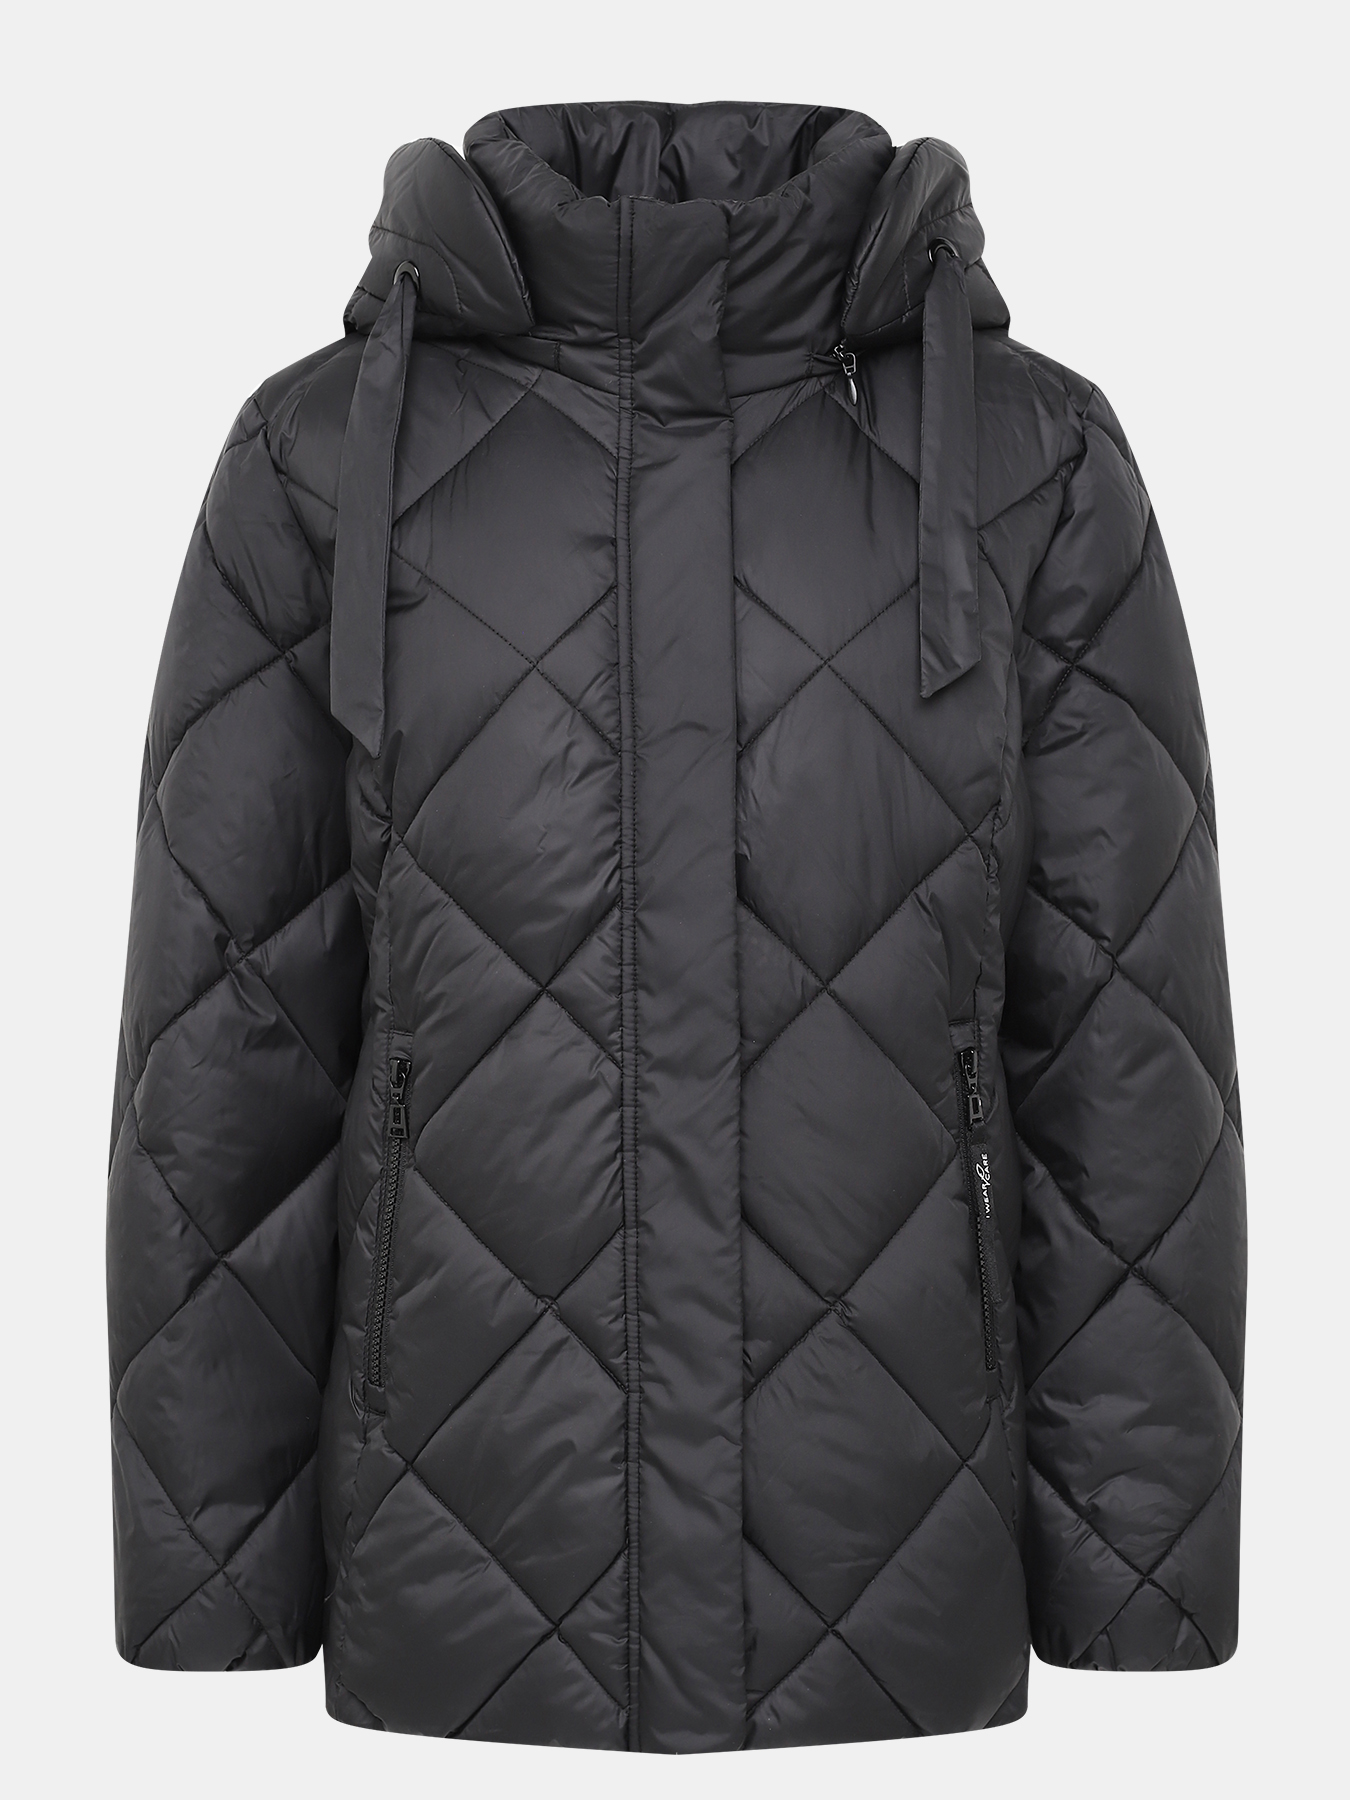 Куртка водоотталкивающая Gerry Weber Edition 421648-025, цвет черный, размер 54